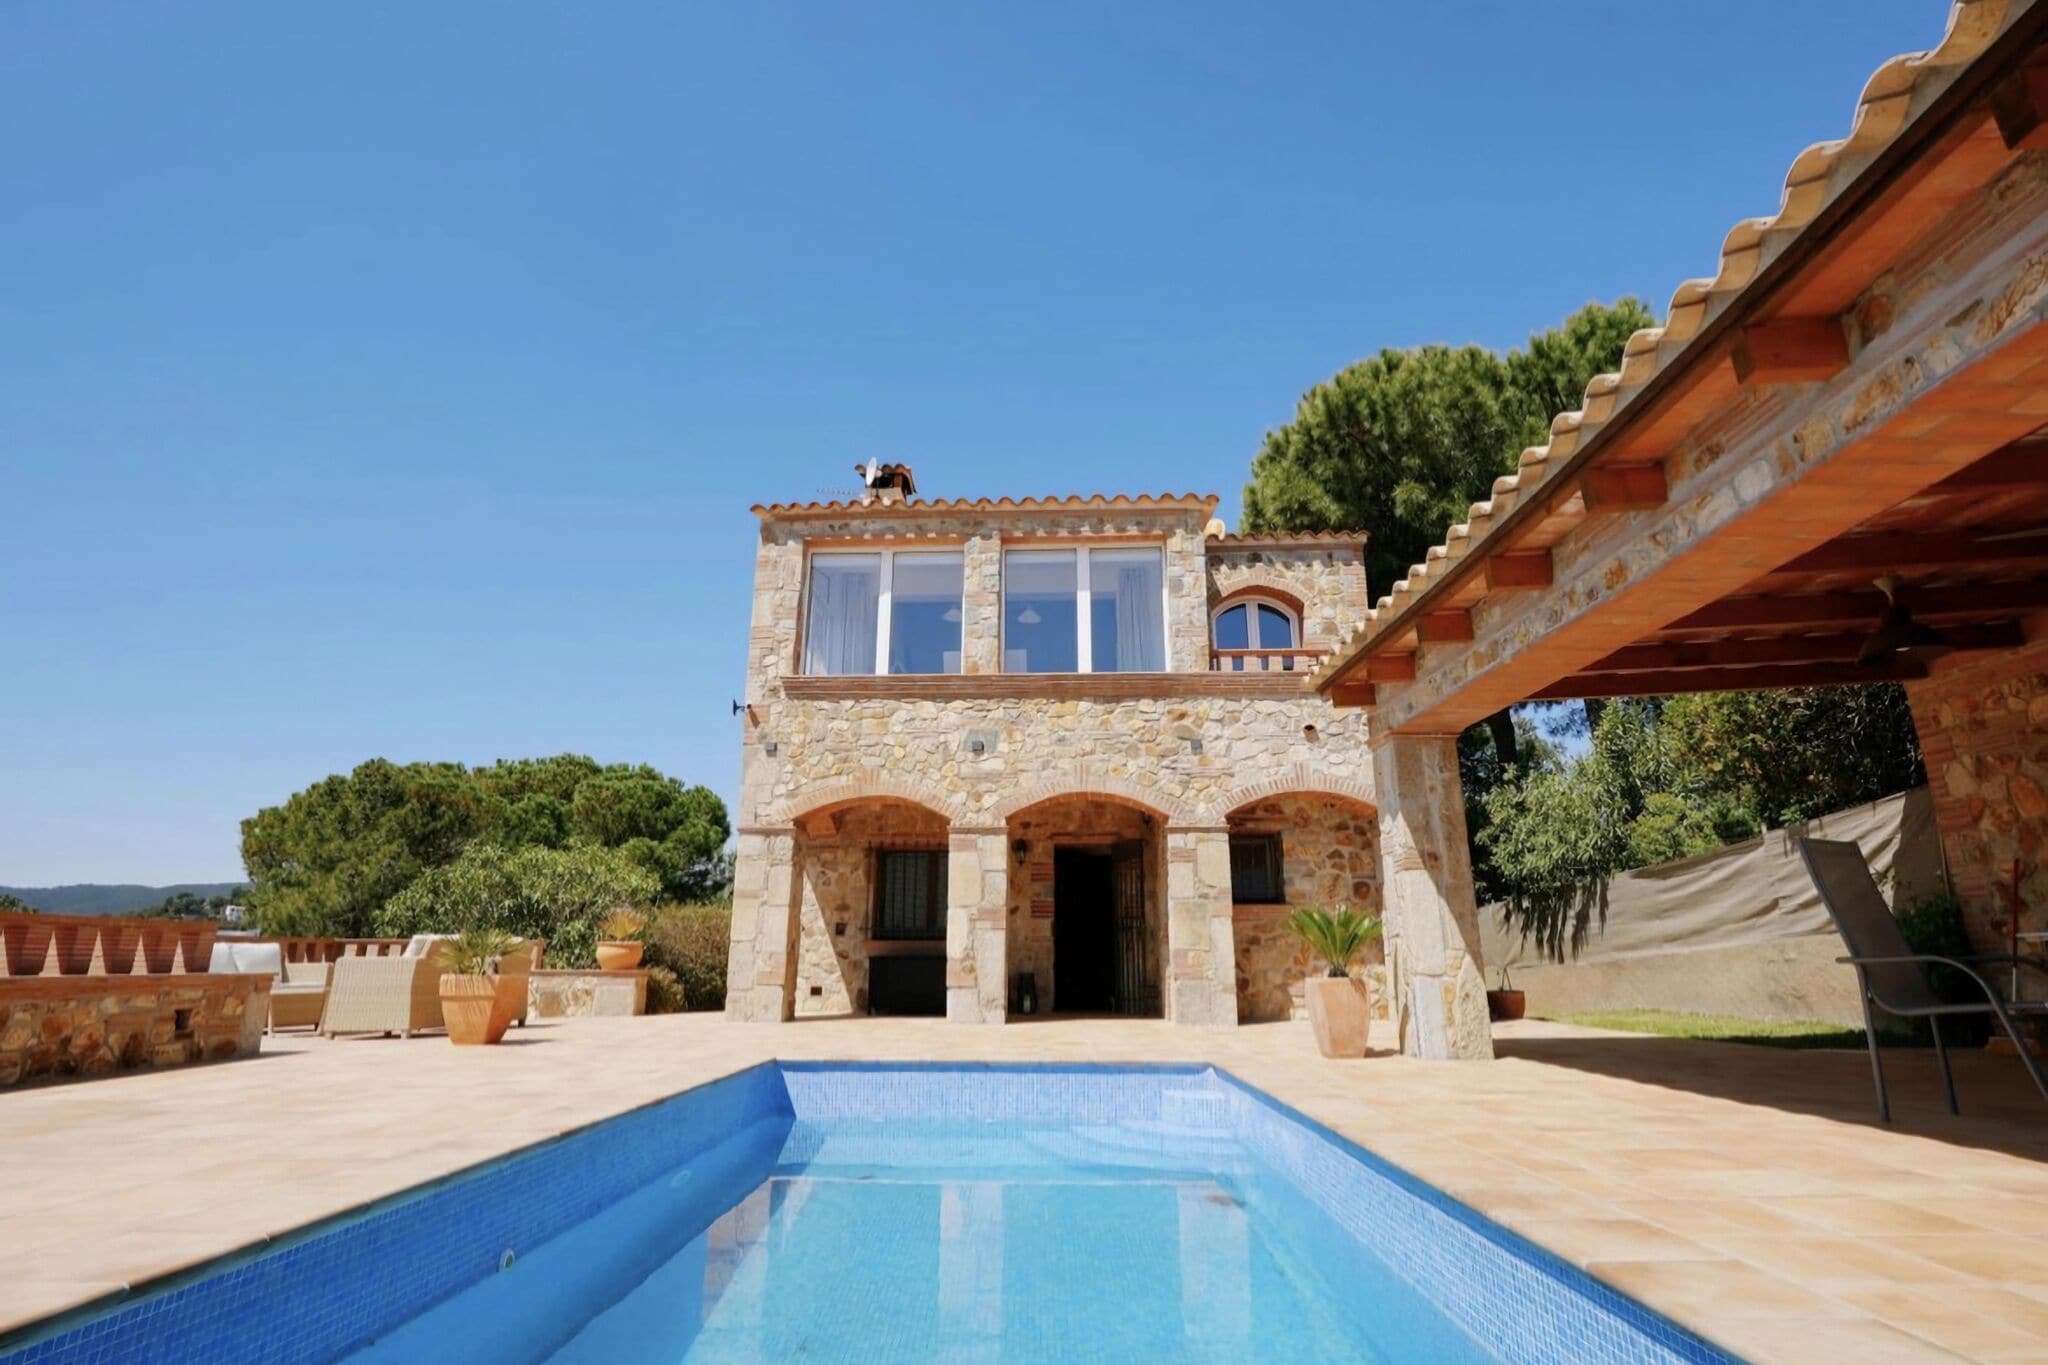 Vrijstaande villa in Catalonië met privézwembad